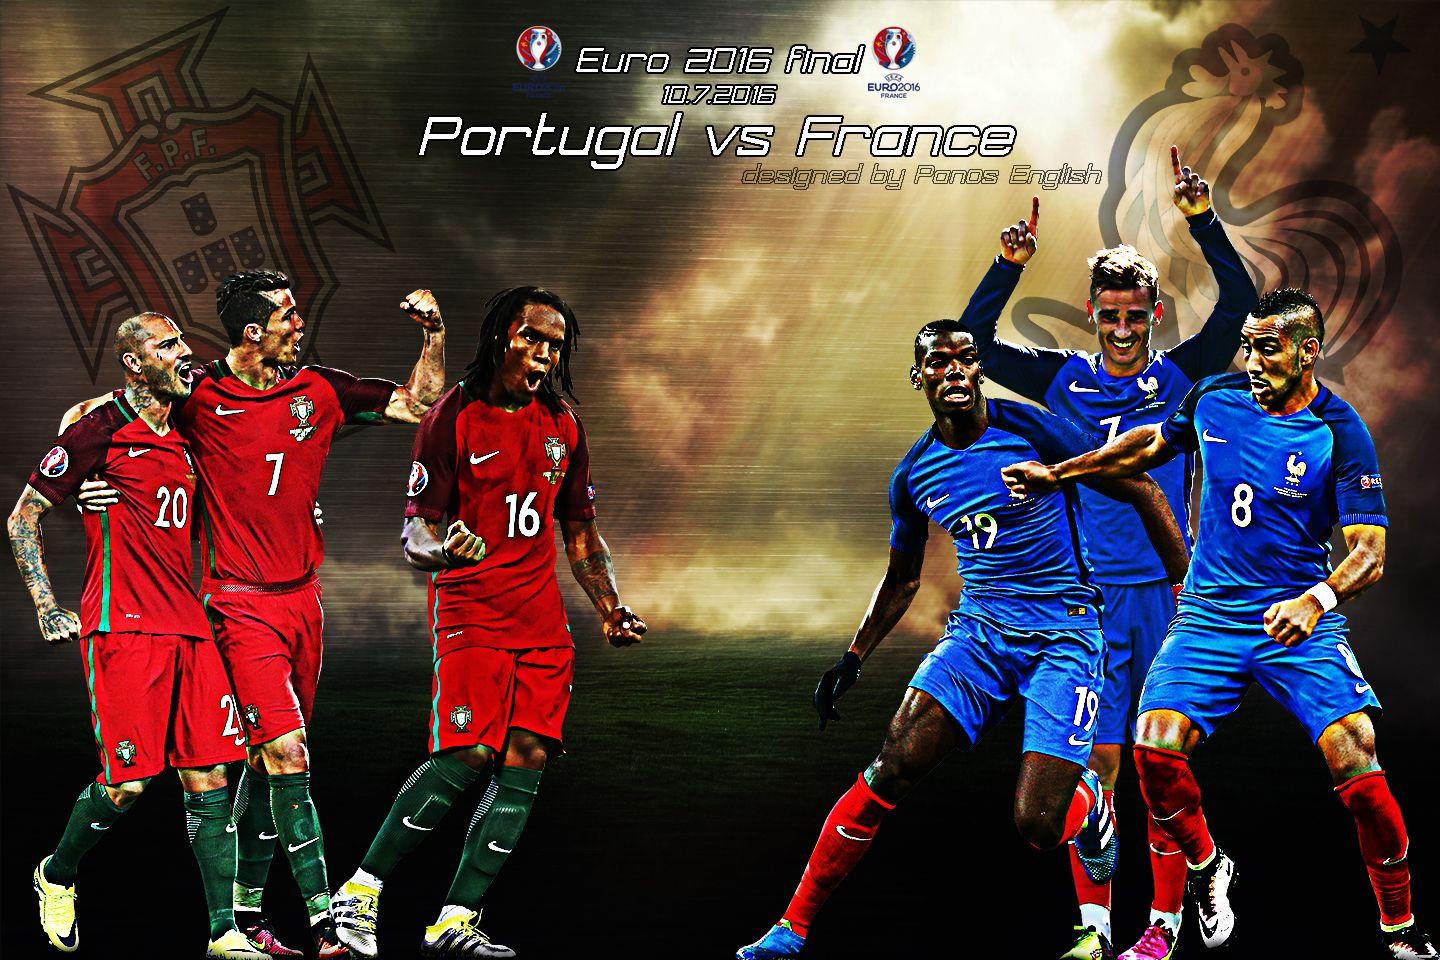 France Vs Portugal